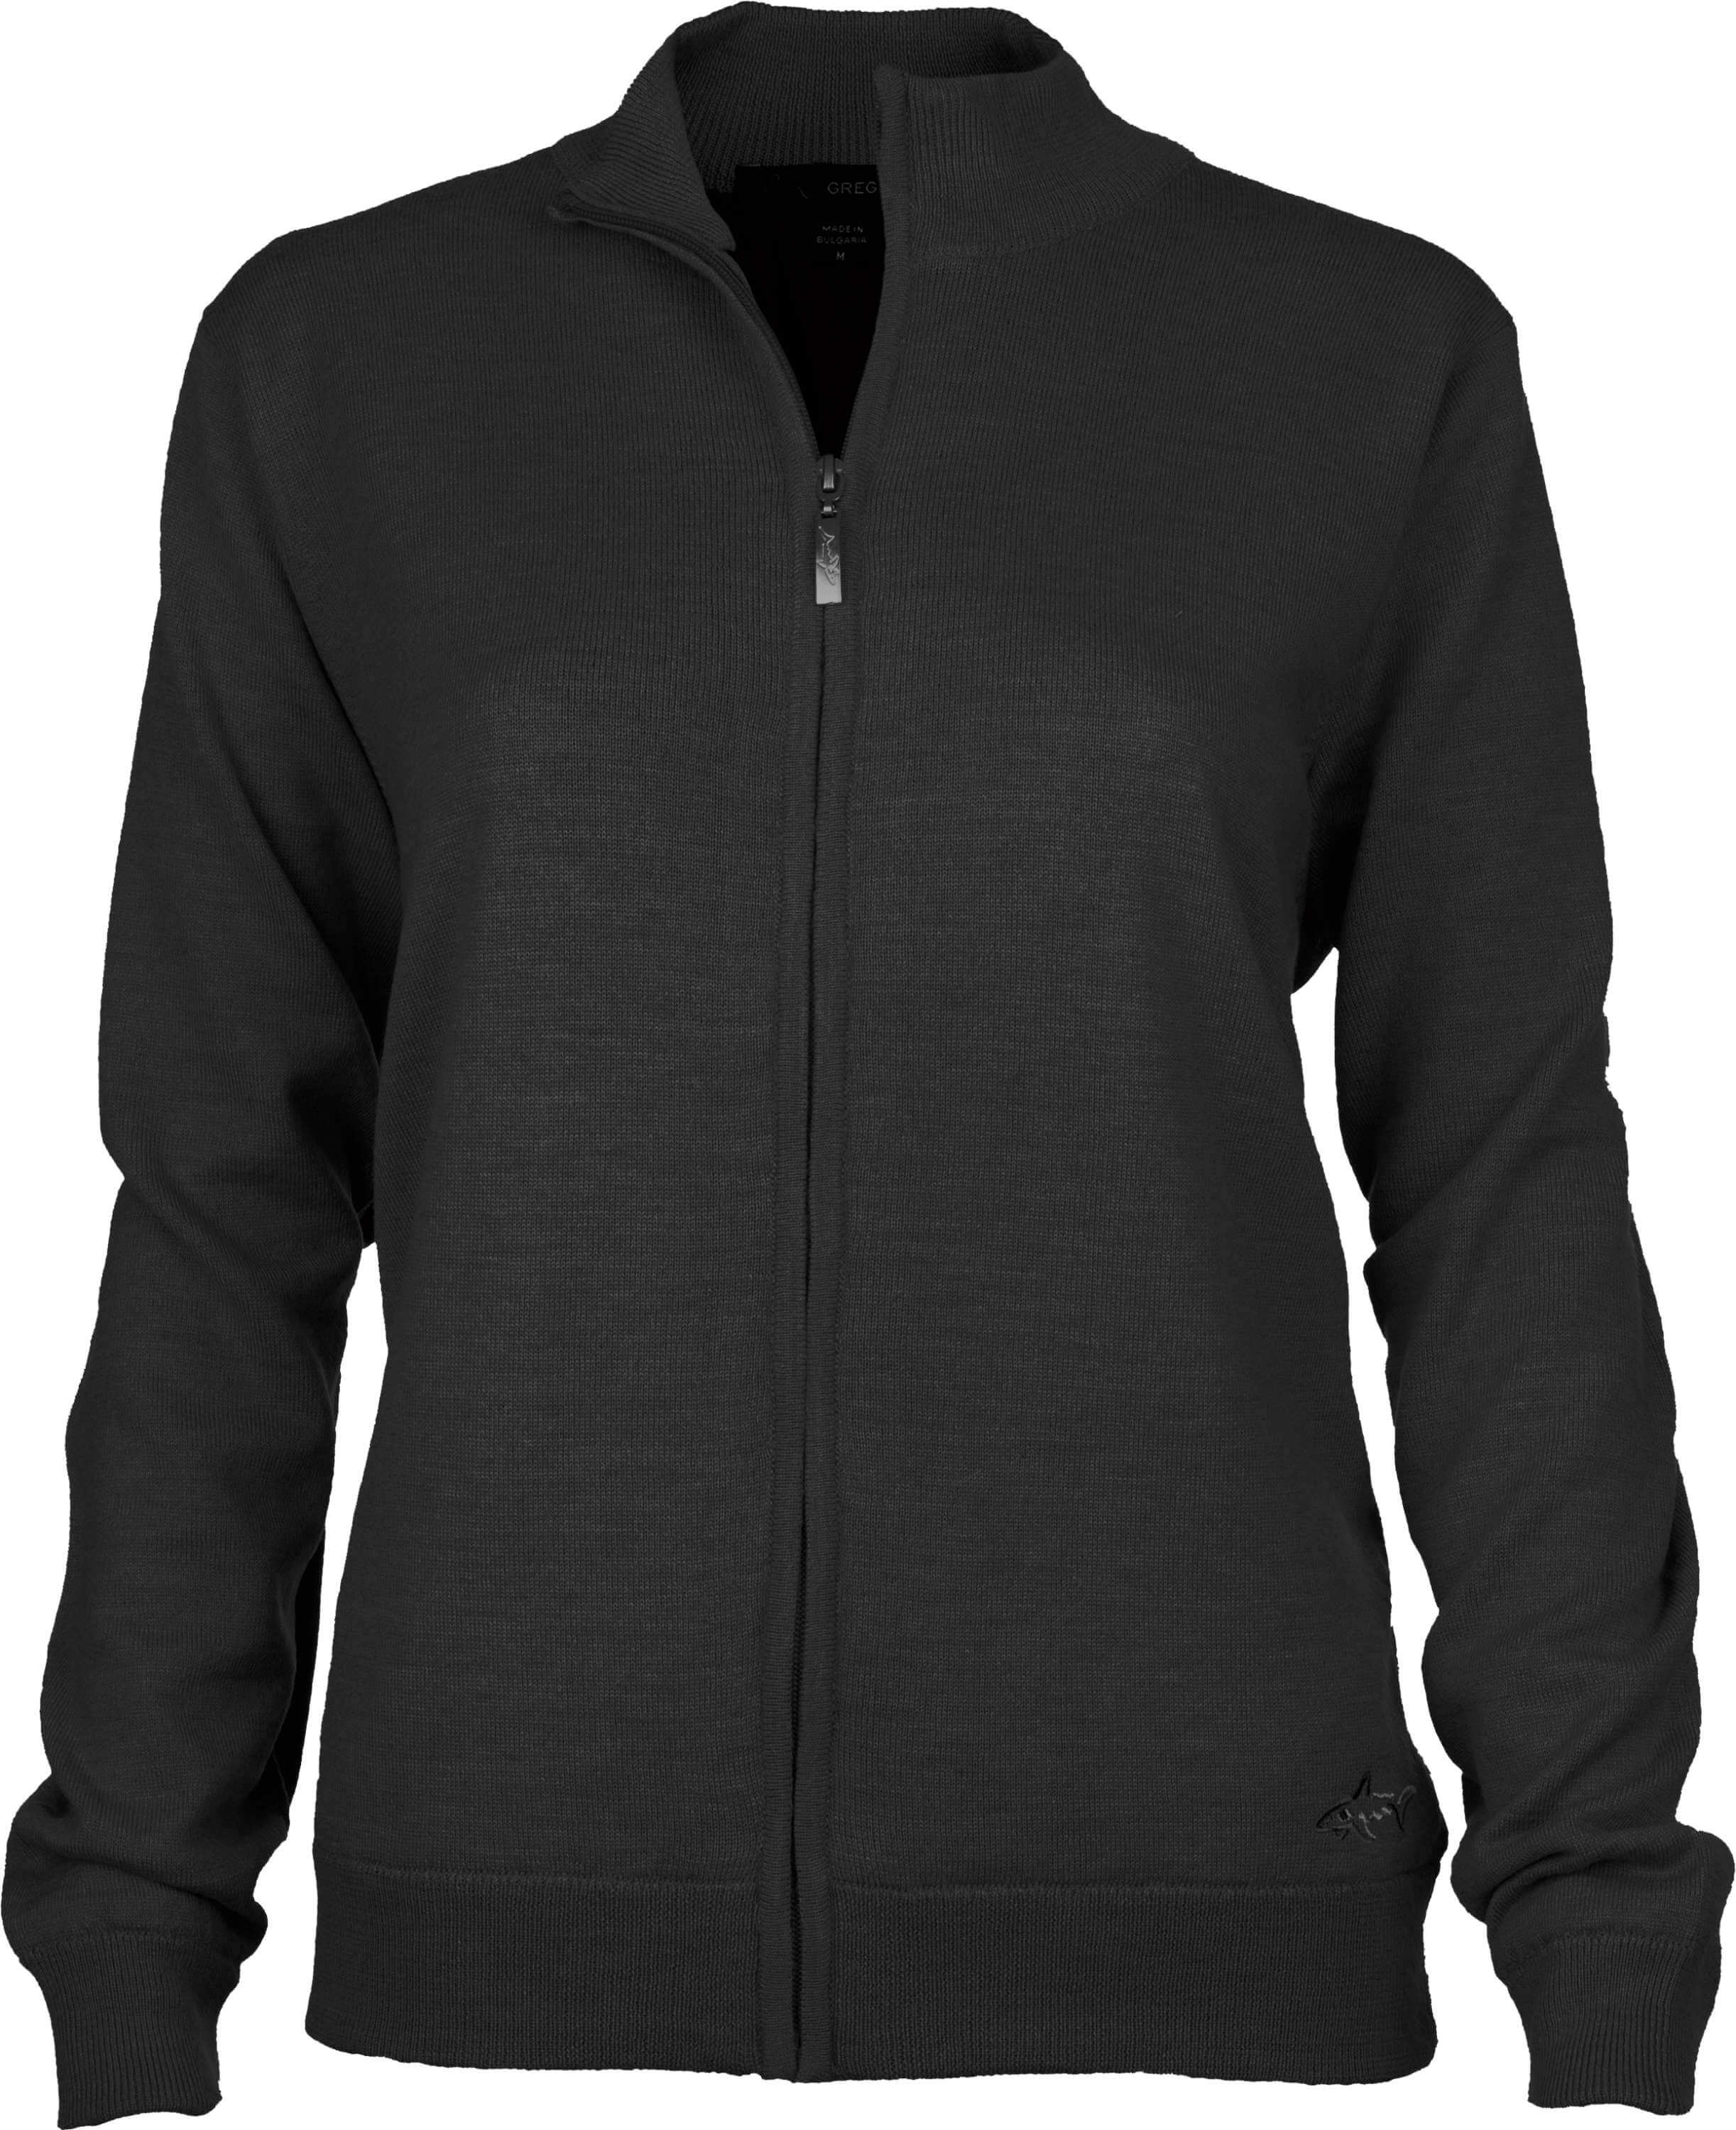 Greg Norman Windbreaker Lined Full-Zip Sweater, charcoal